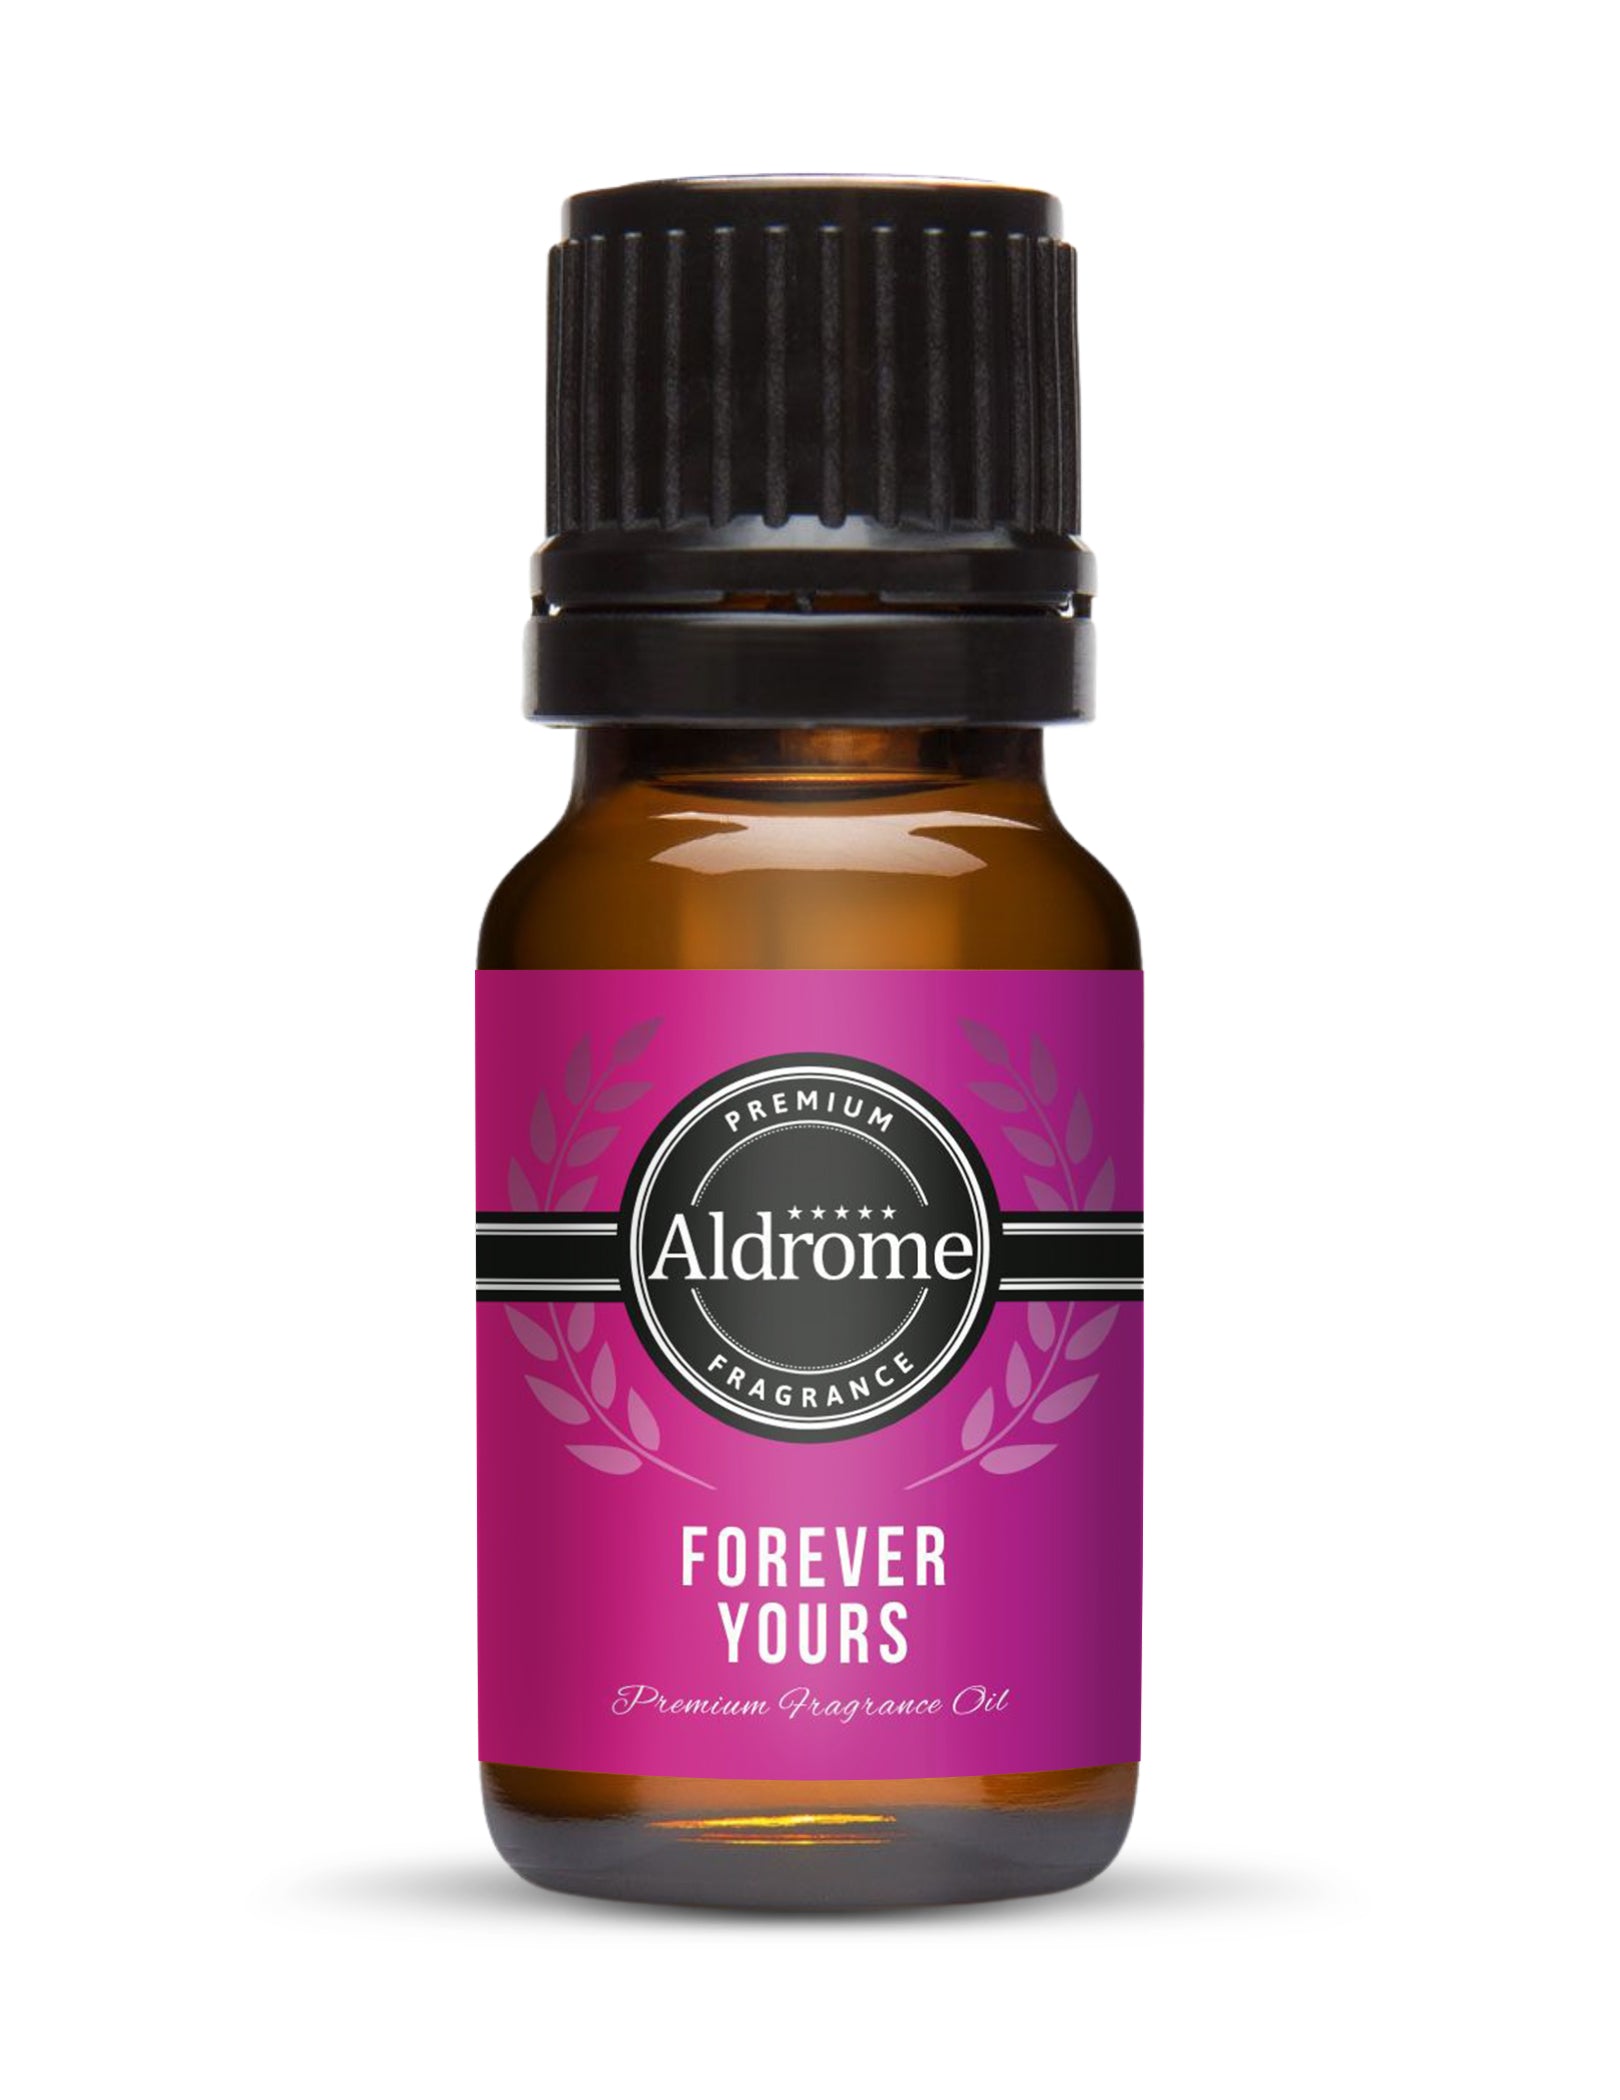 Forever yours Fragrance Oil - 10ml